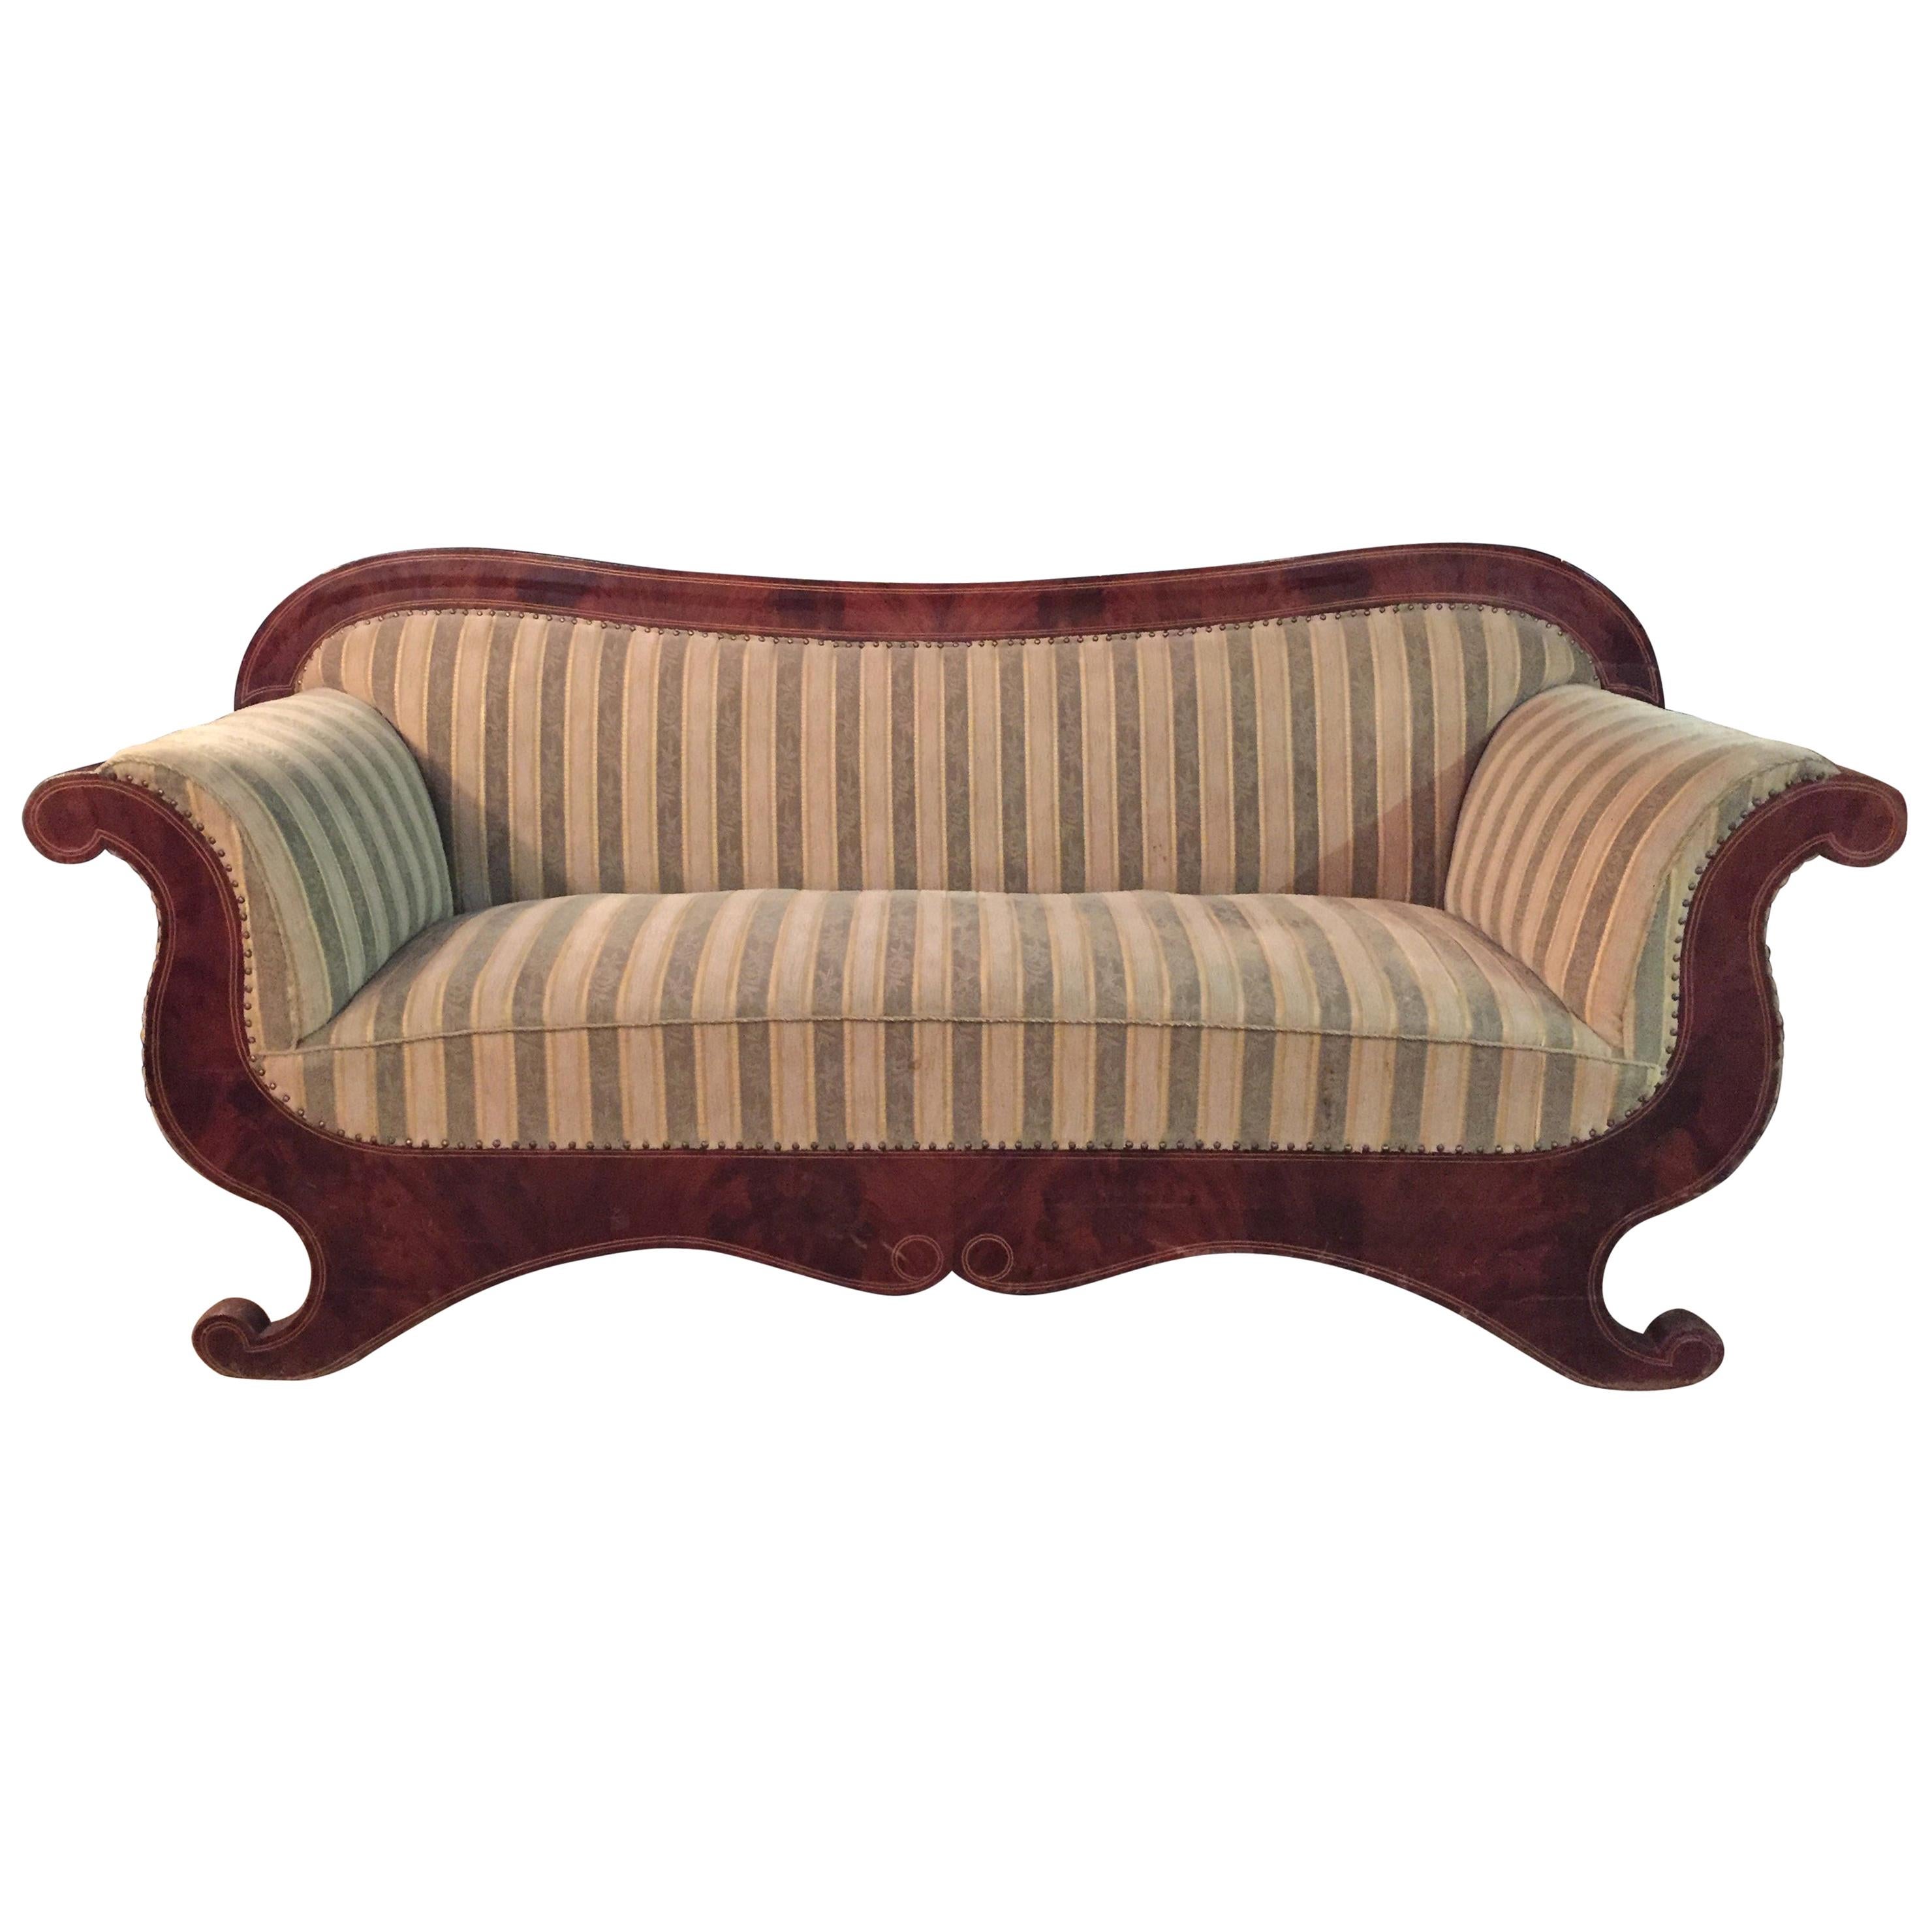 Antique Biedermeier Sofa Couch circa 1825 Mahogany